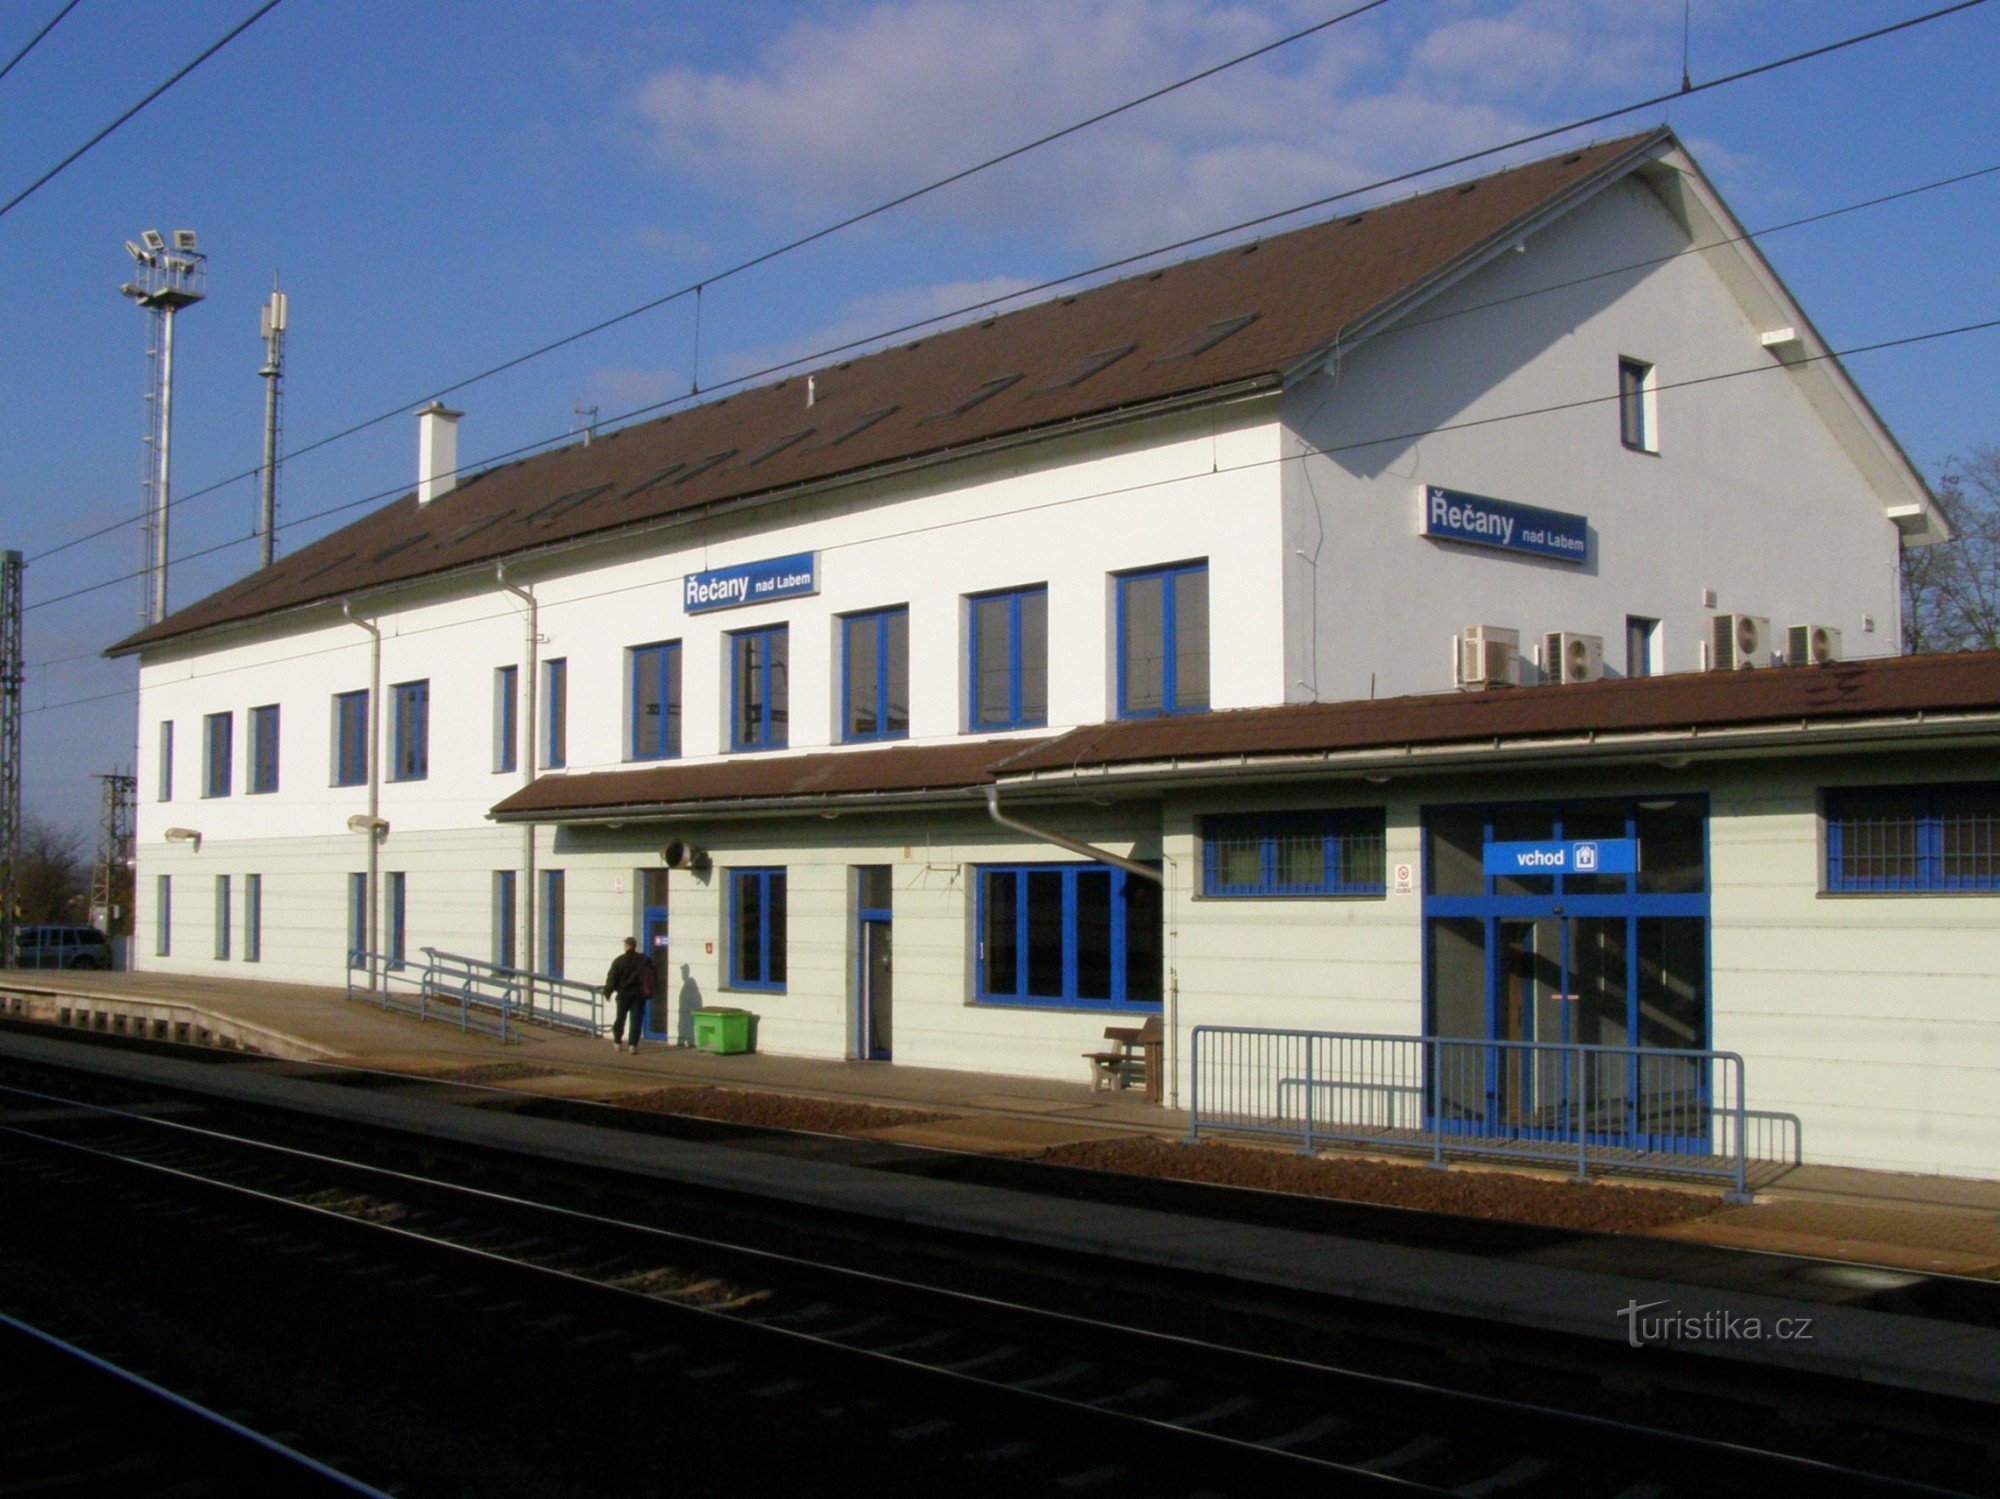 Řečany nad Labem - järnvägsstation